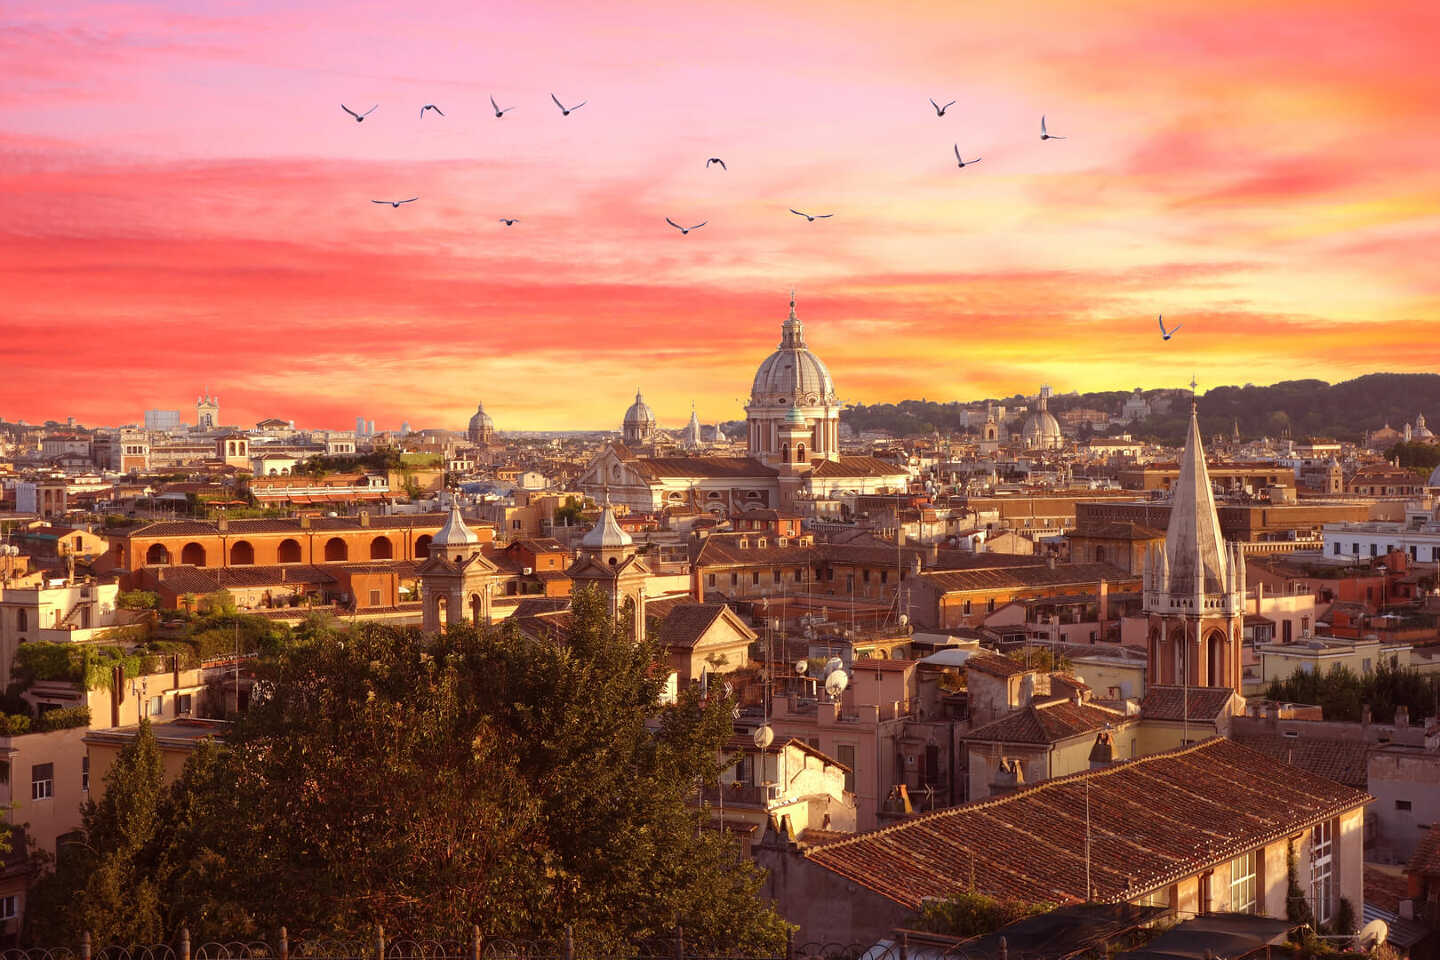 Rome avec le colisée à gauche et le coucher de soleil en arrière-plan